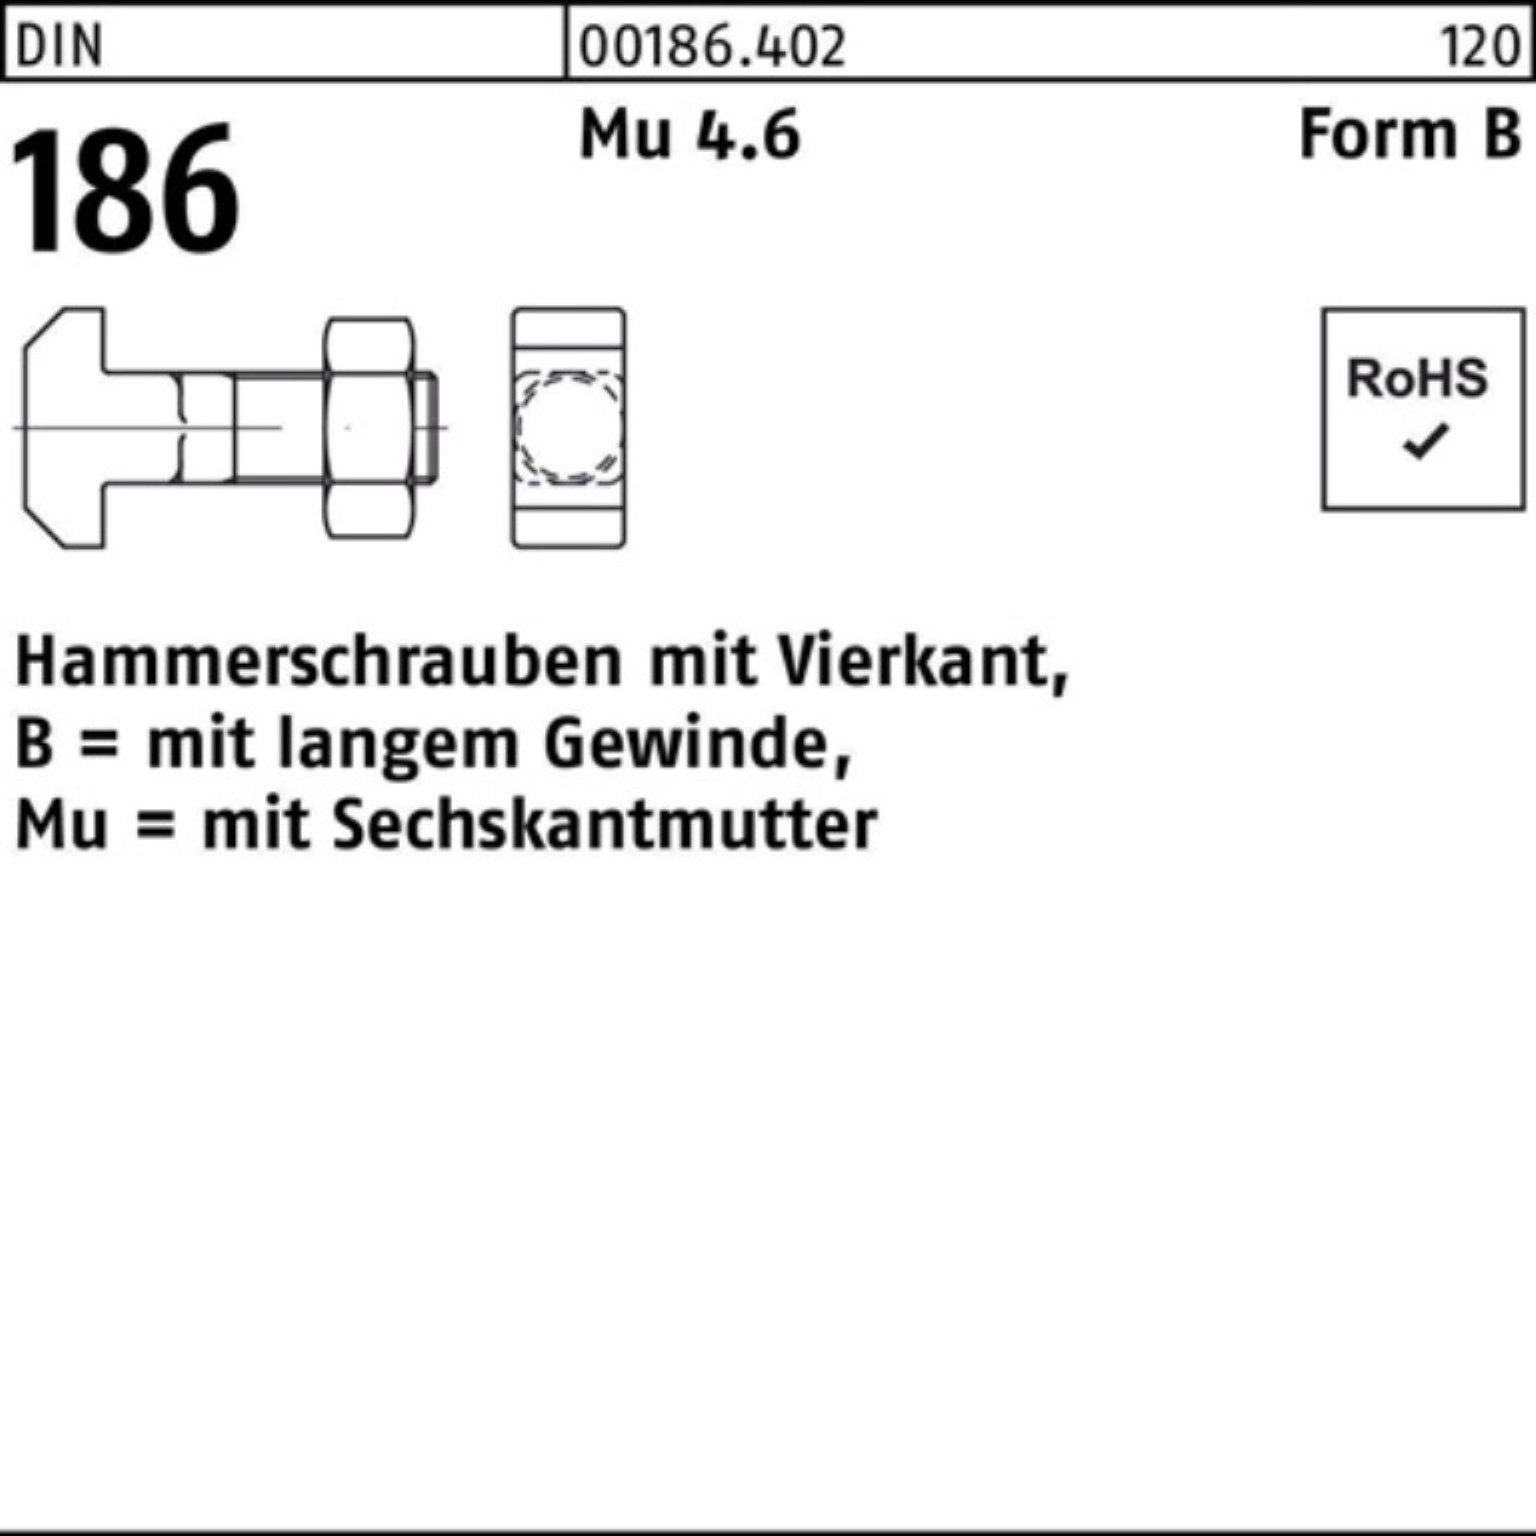 Pack 100er Vierkant BM Schraube 186 Hammerschraube 90 DIN FormB Reyher 20x 6-ktmutter